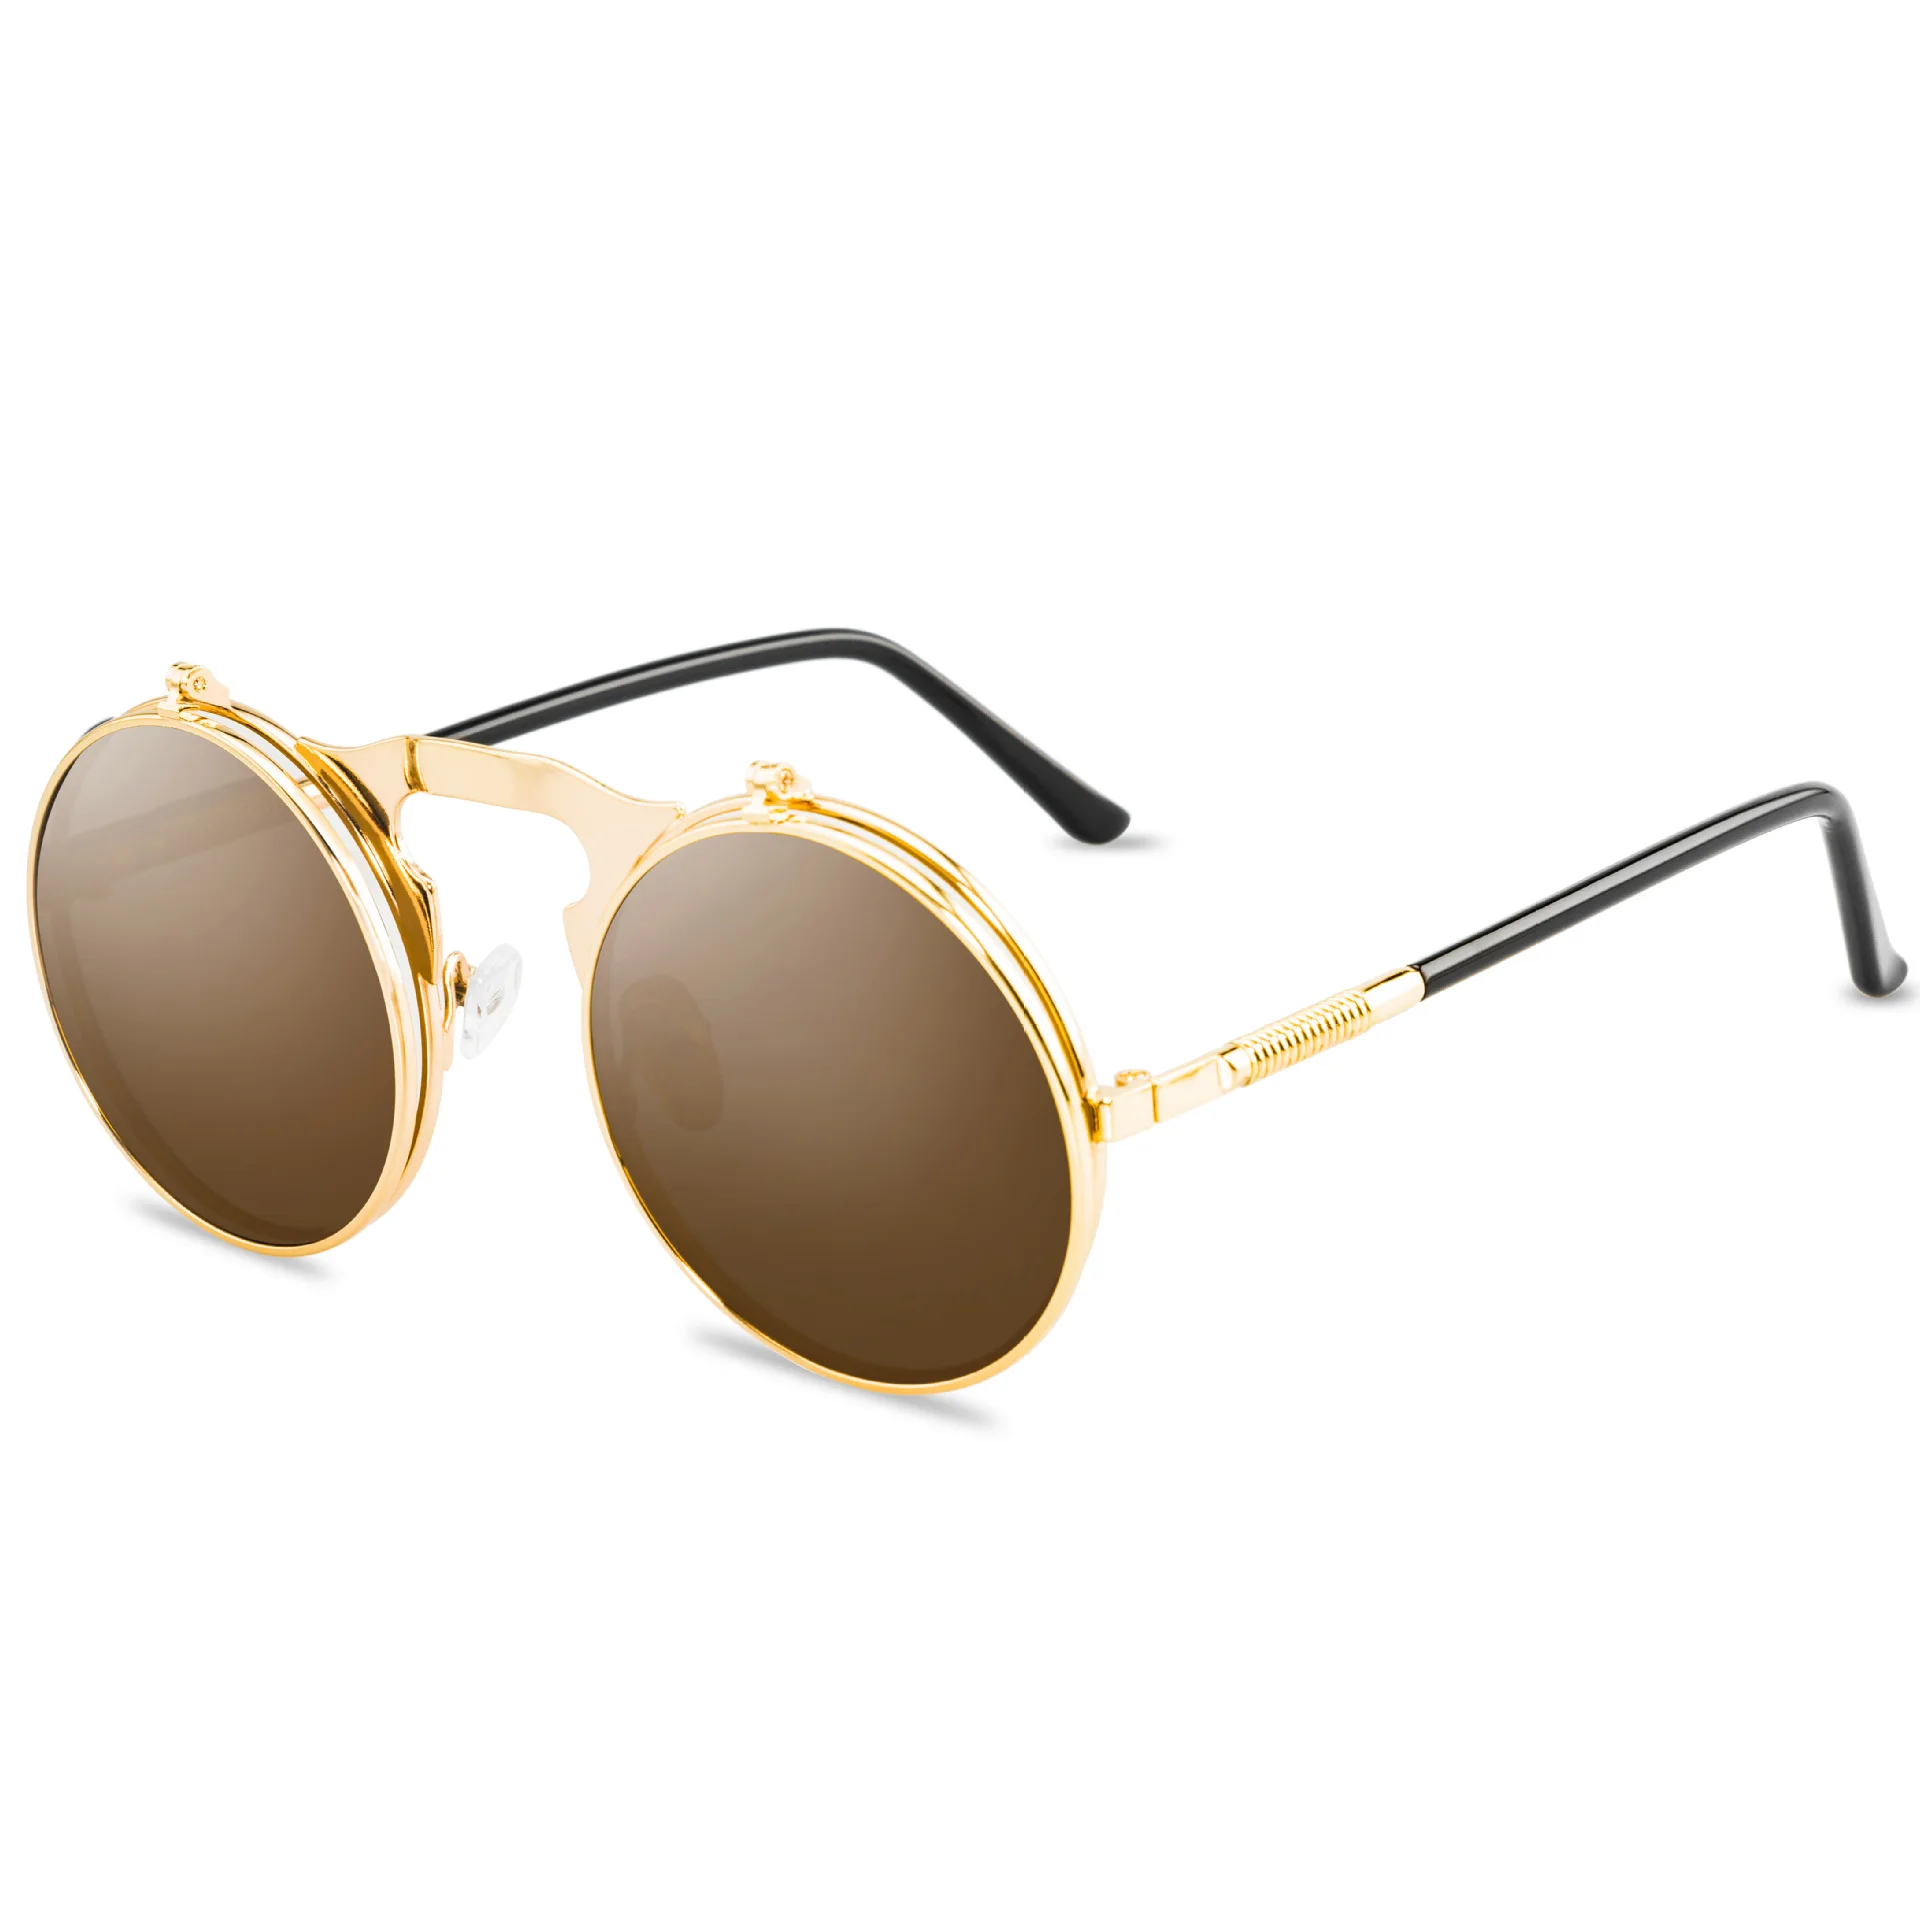 Xinfeite солнцезащитные очки классические ретро стимпанк флип металлические круглые цветные UV400 для отдыха на открытом воздухе солнцезащитные очки для мужчин и женщин X566 - Цвет линз: 3